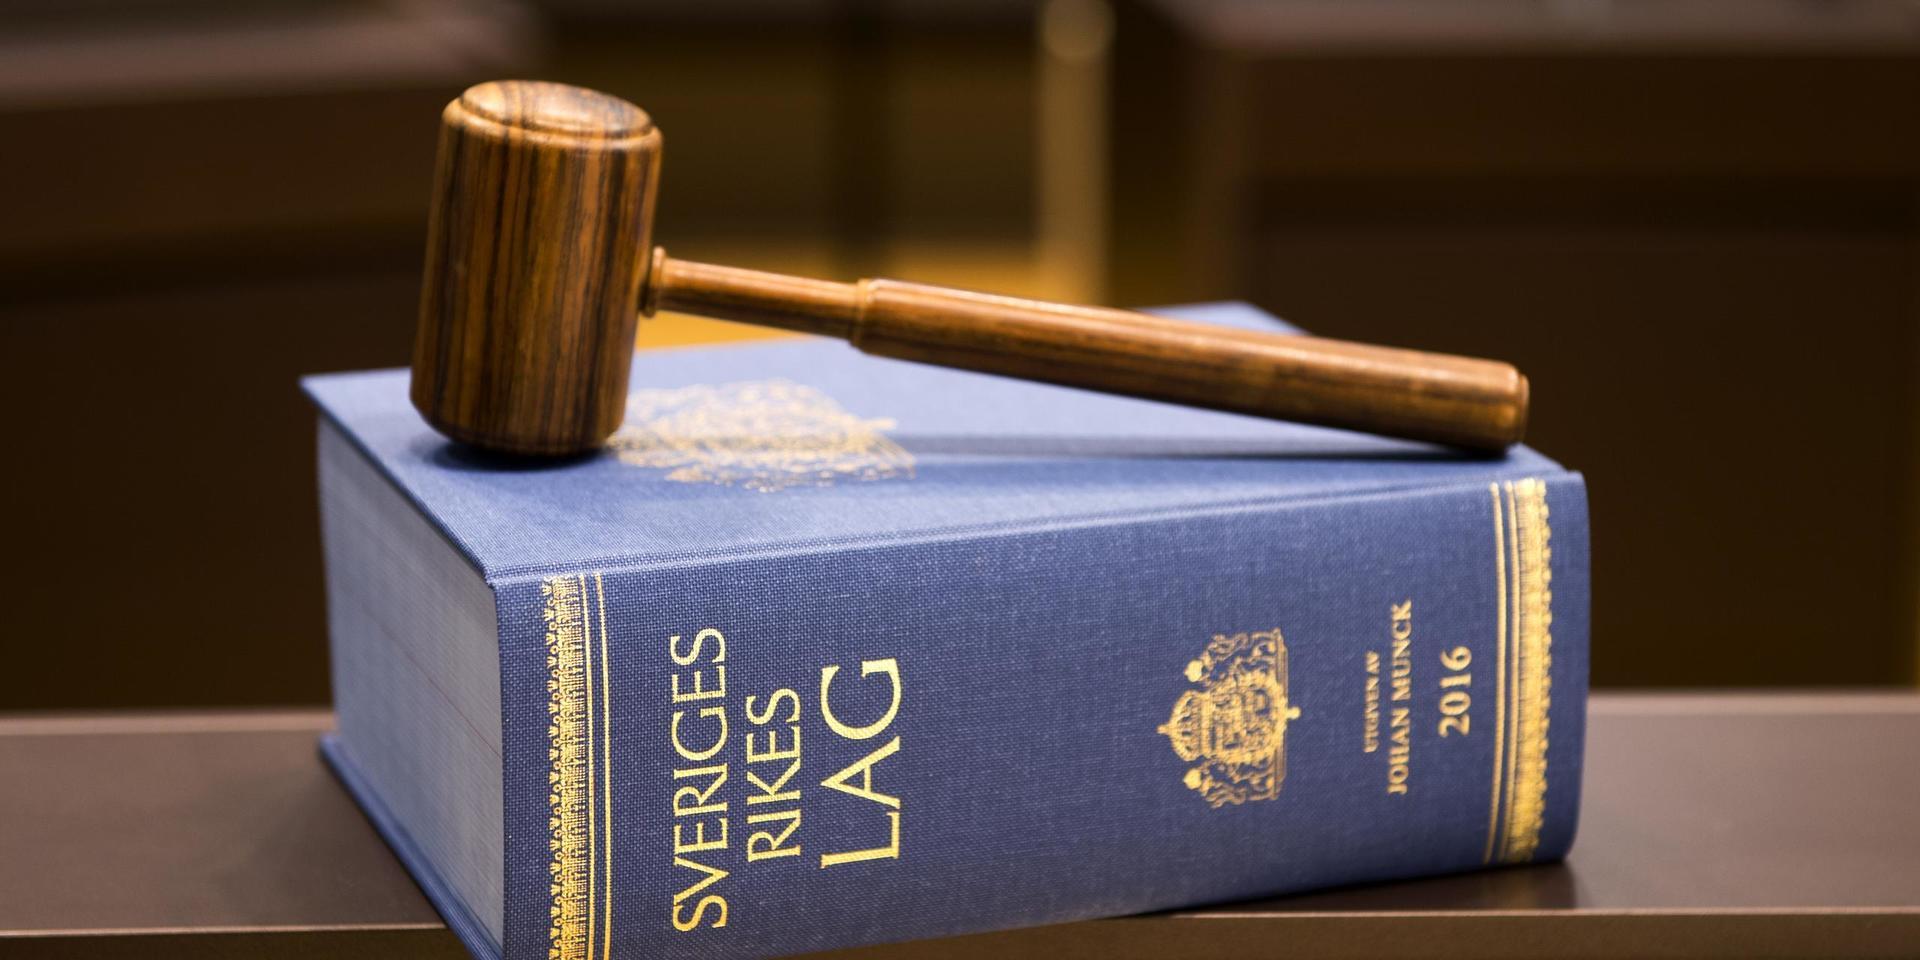 Domstol blir arena för politik. Flera organisationer vill nu ställa svenska staten inför rätta.